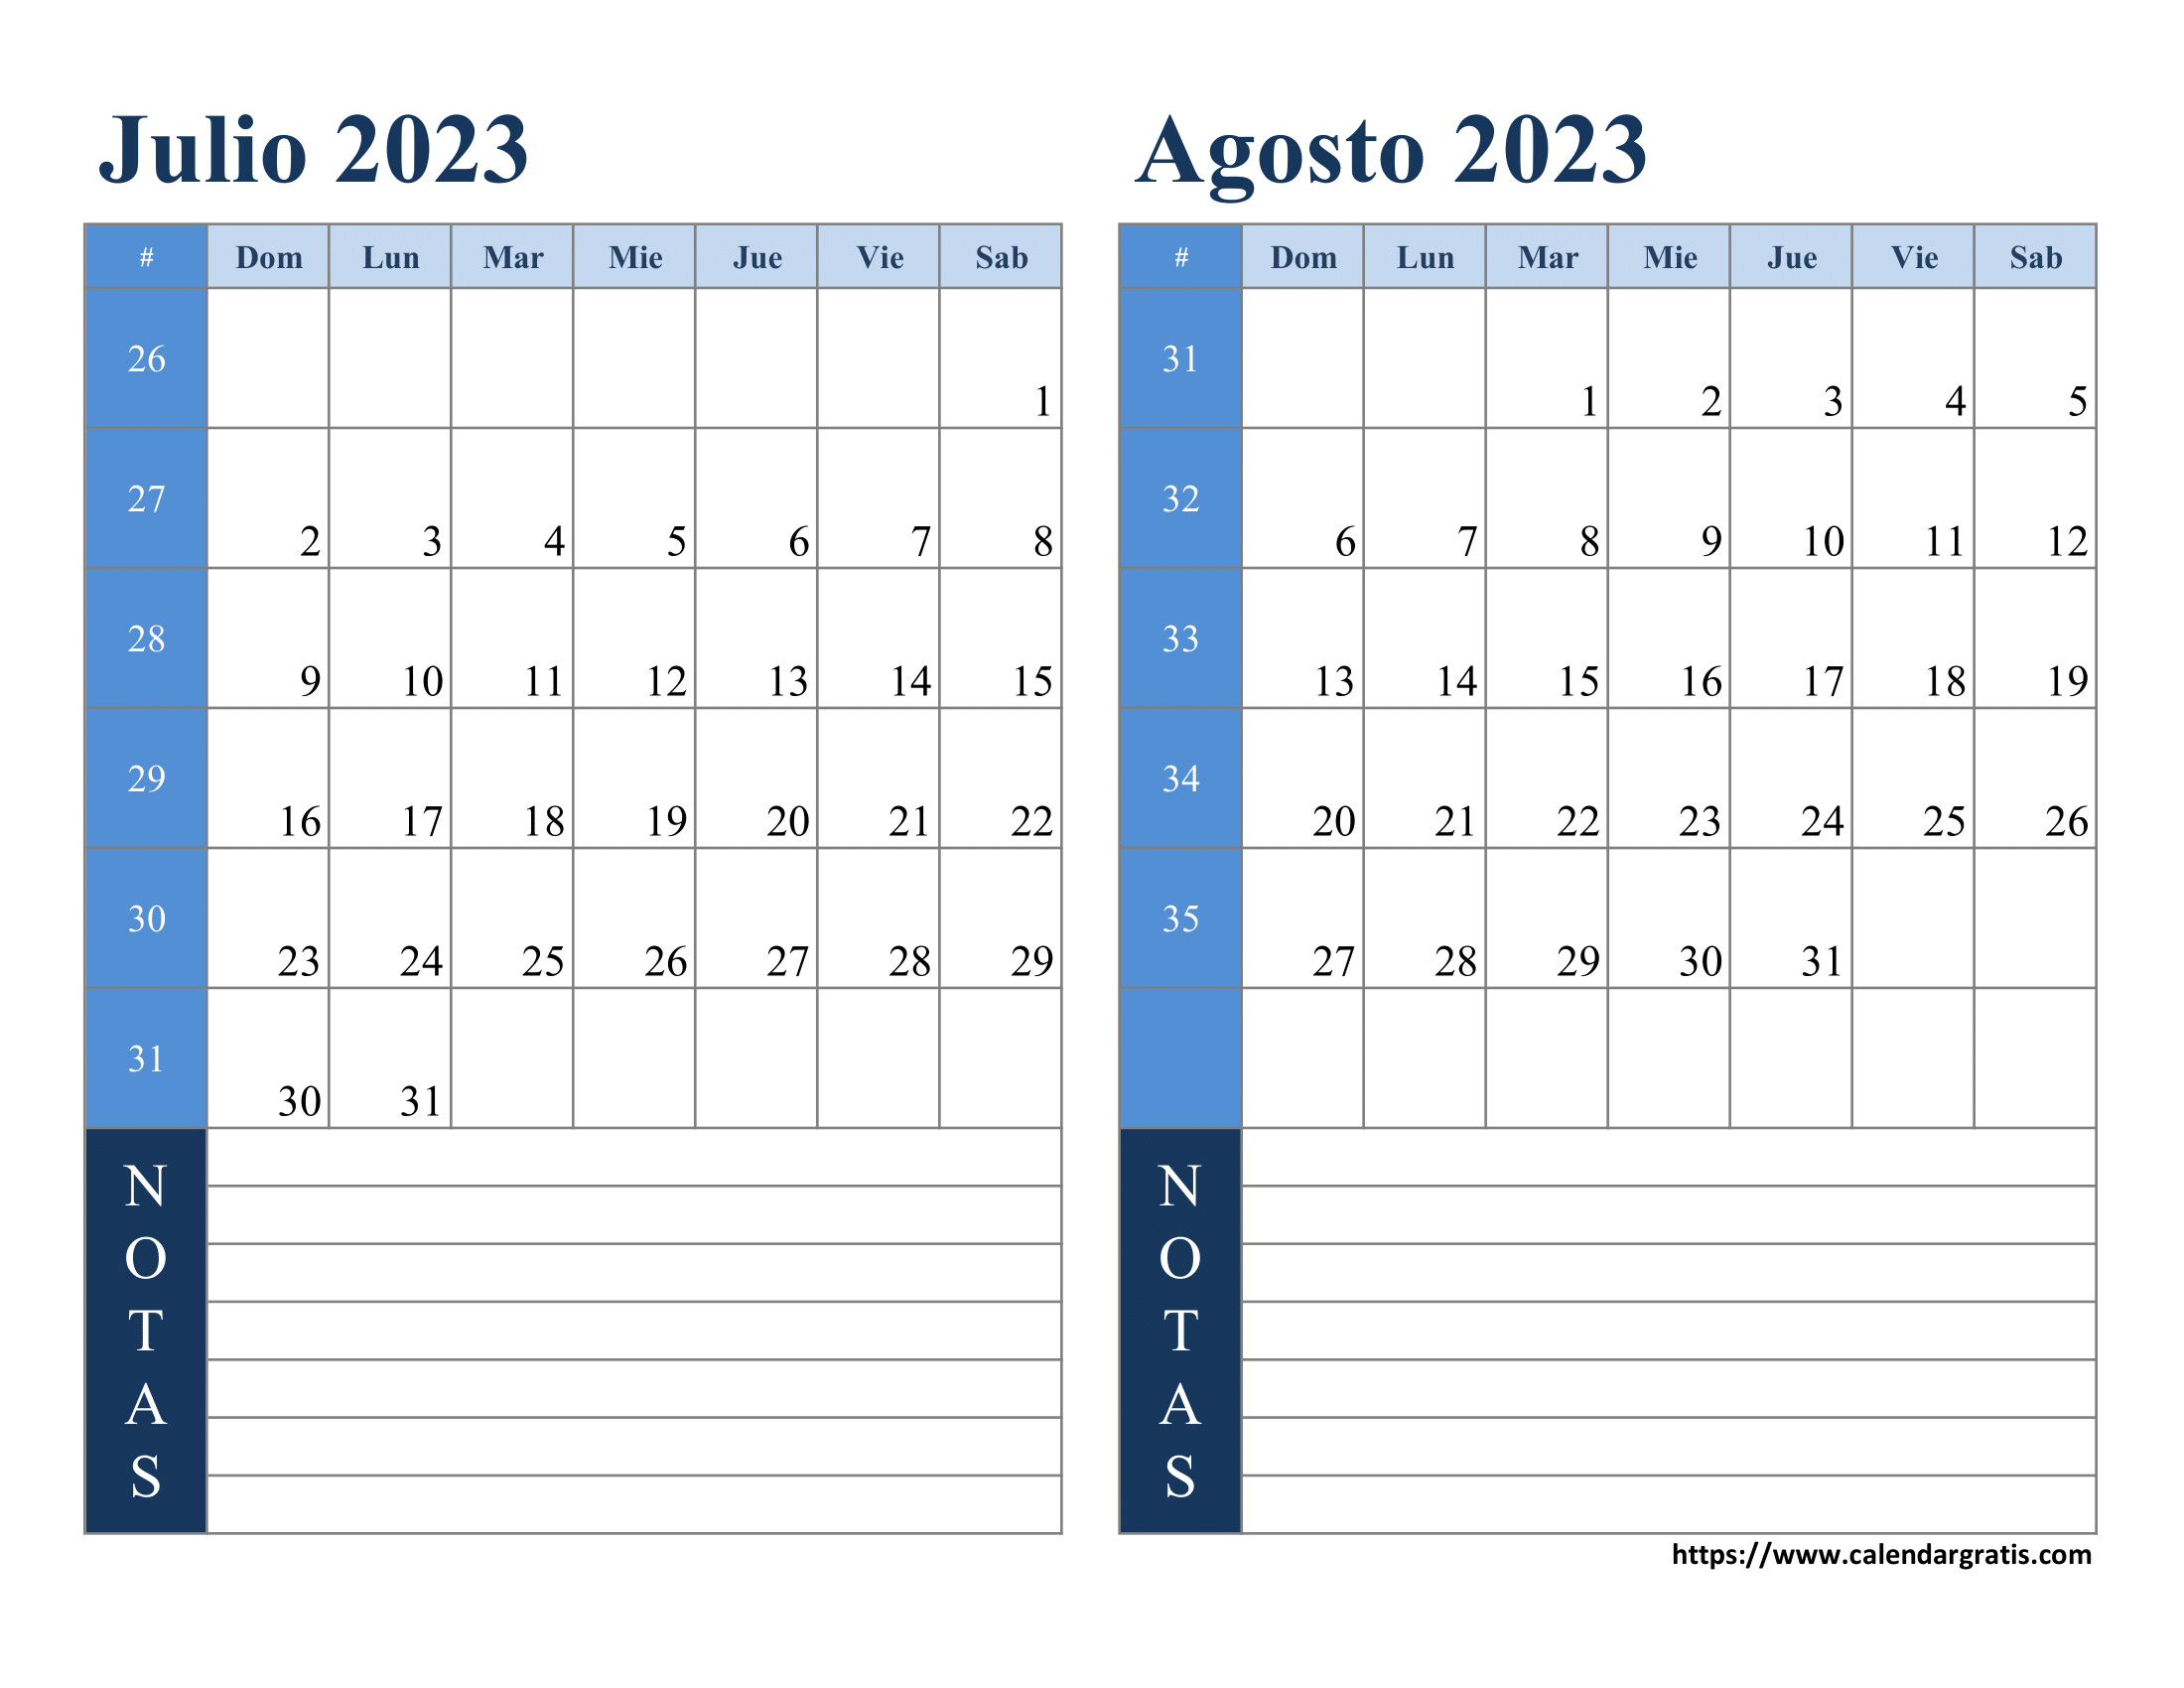 Calendario julio agosto 2023 con notas